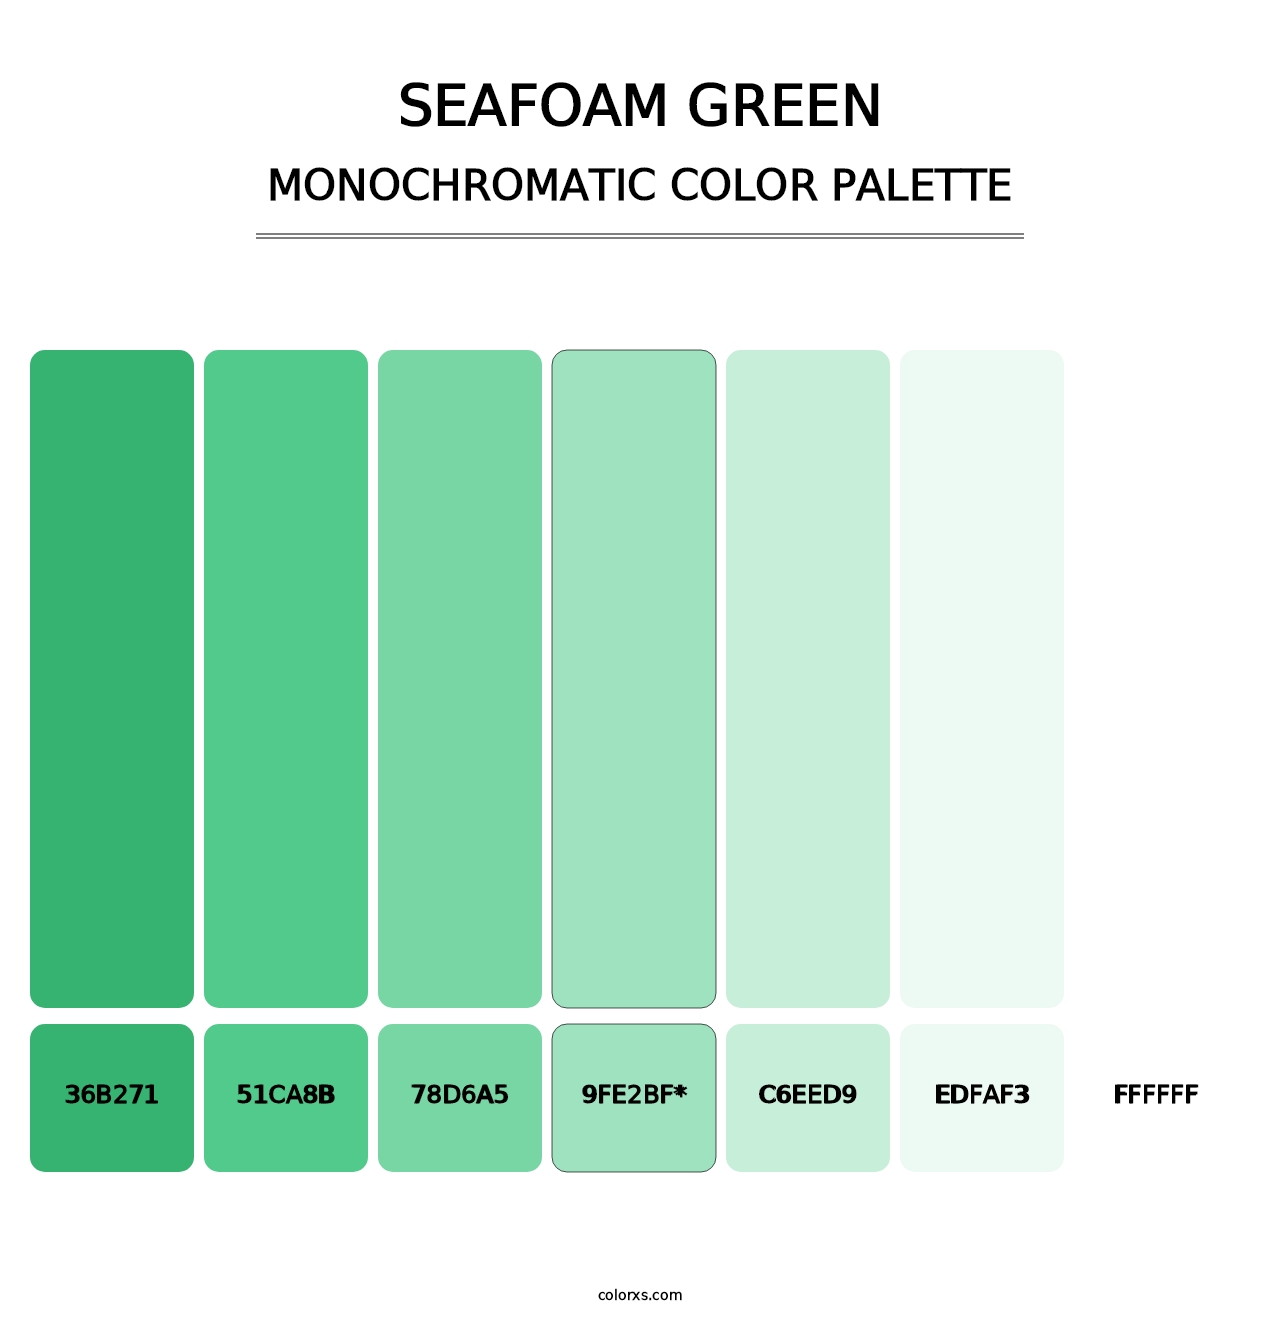 Seafoam Green - Monochromatic Color Palette